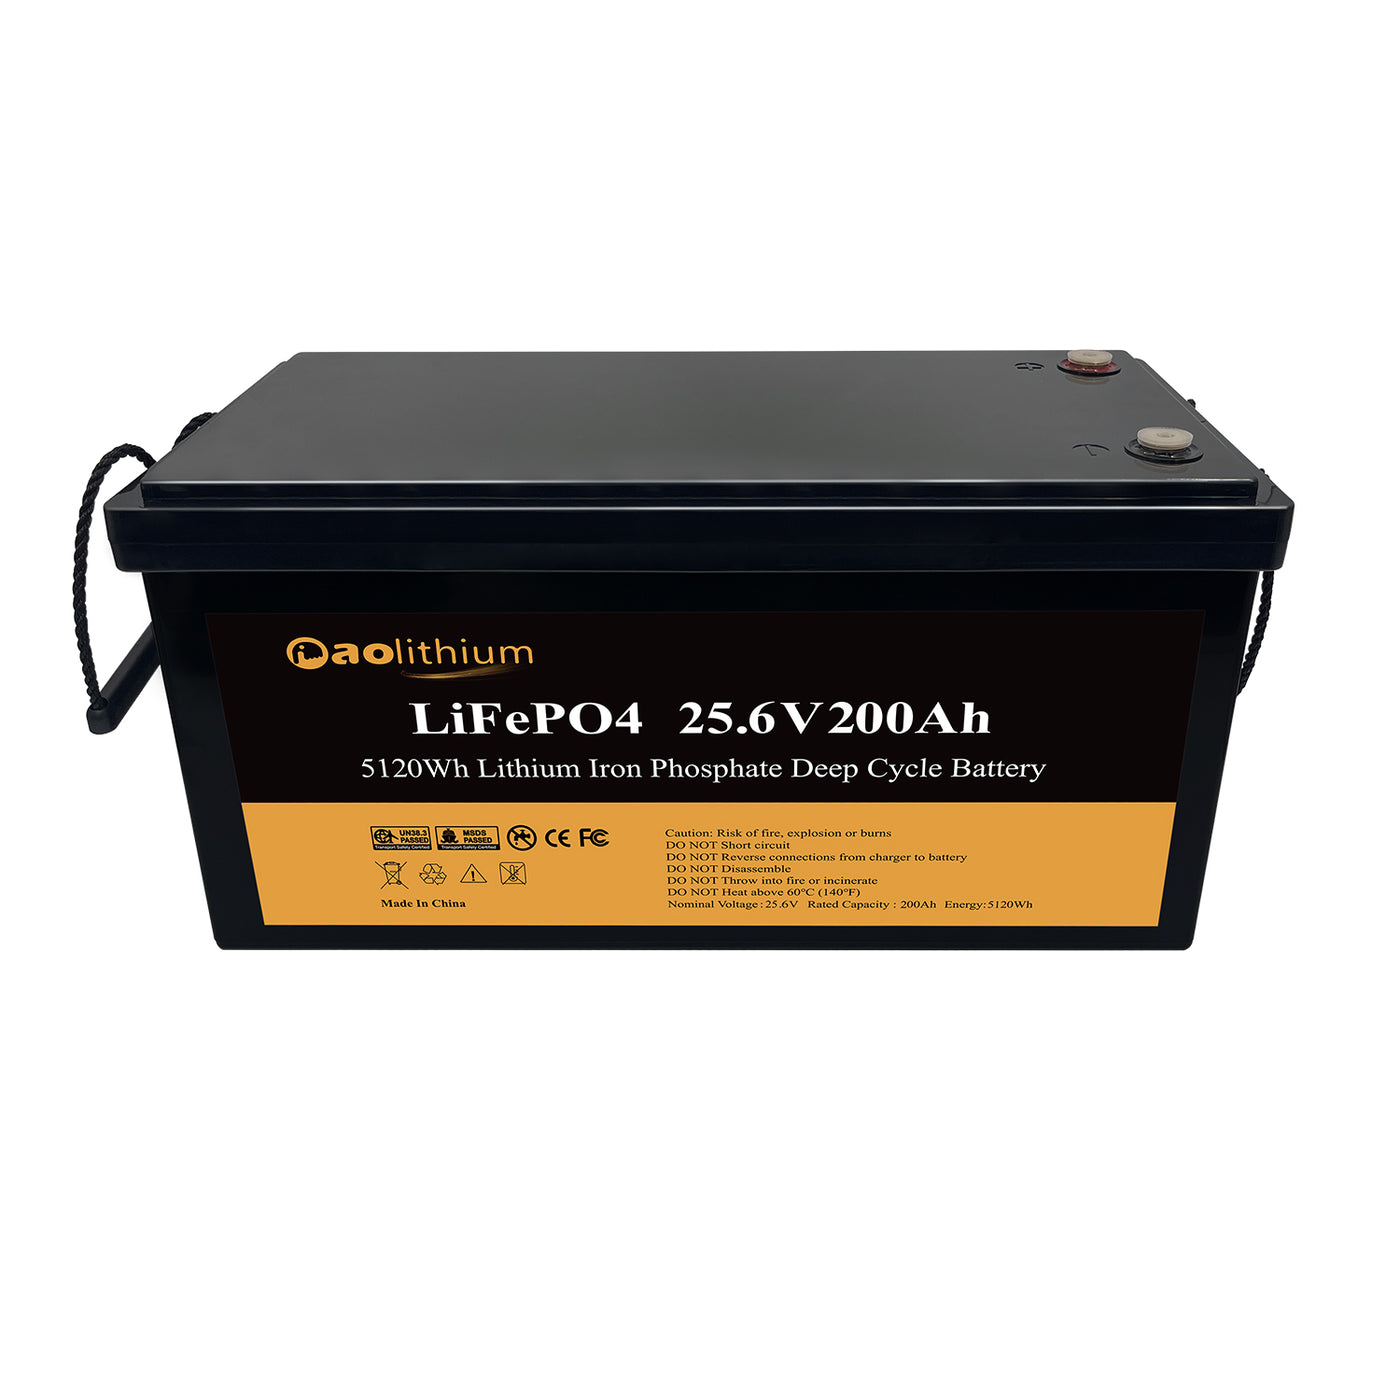 Batterie 12V100Ah-4S Lithium LiFePO4